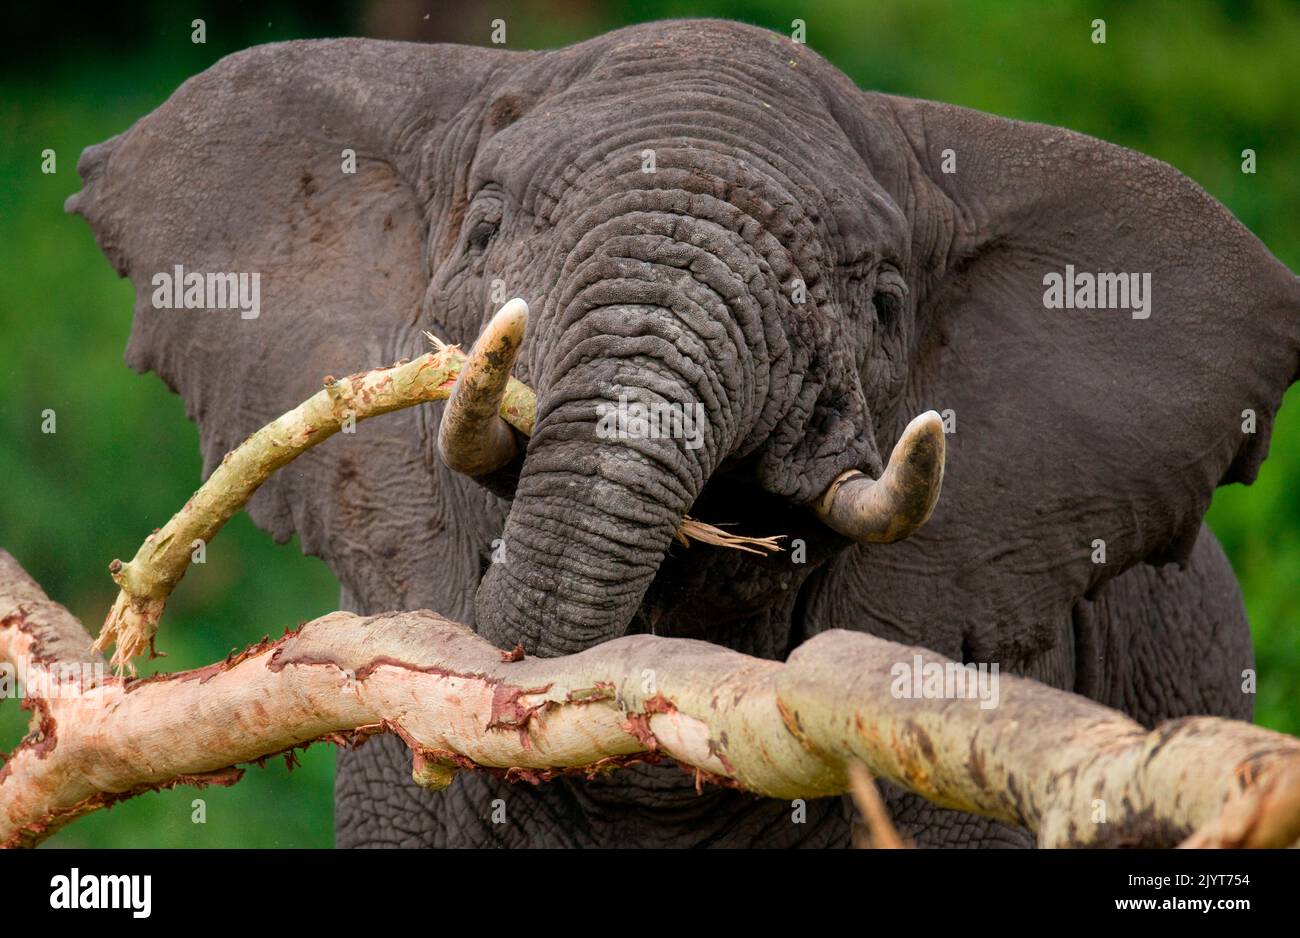 Der große Elefant (Loxodonta africana) bricht einen Baum. Afrika. Kenia. Tansania. Serengeti. Maasai Mara. Stockfoto